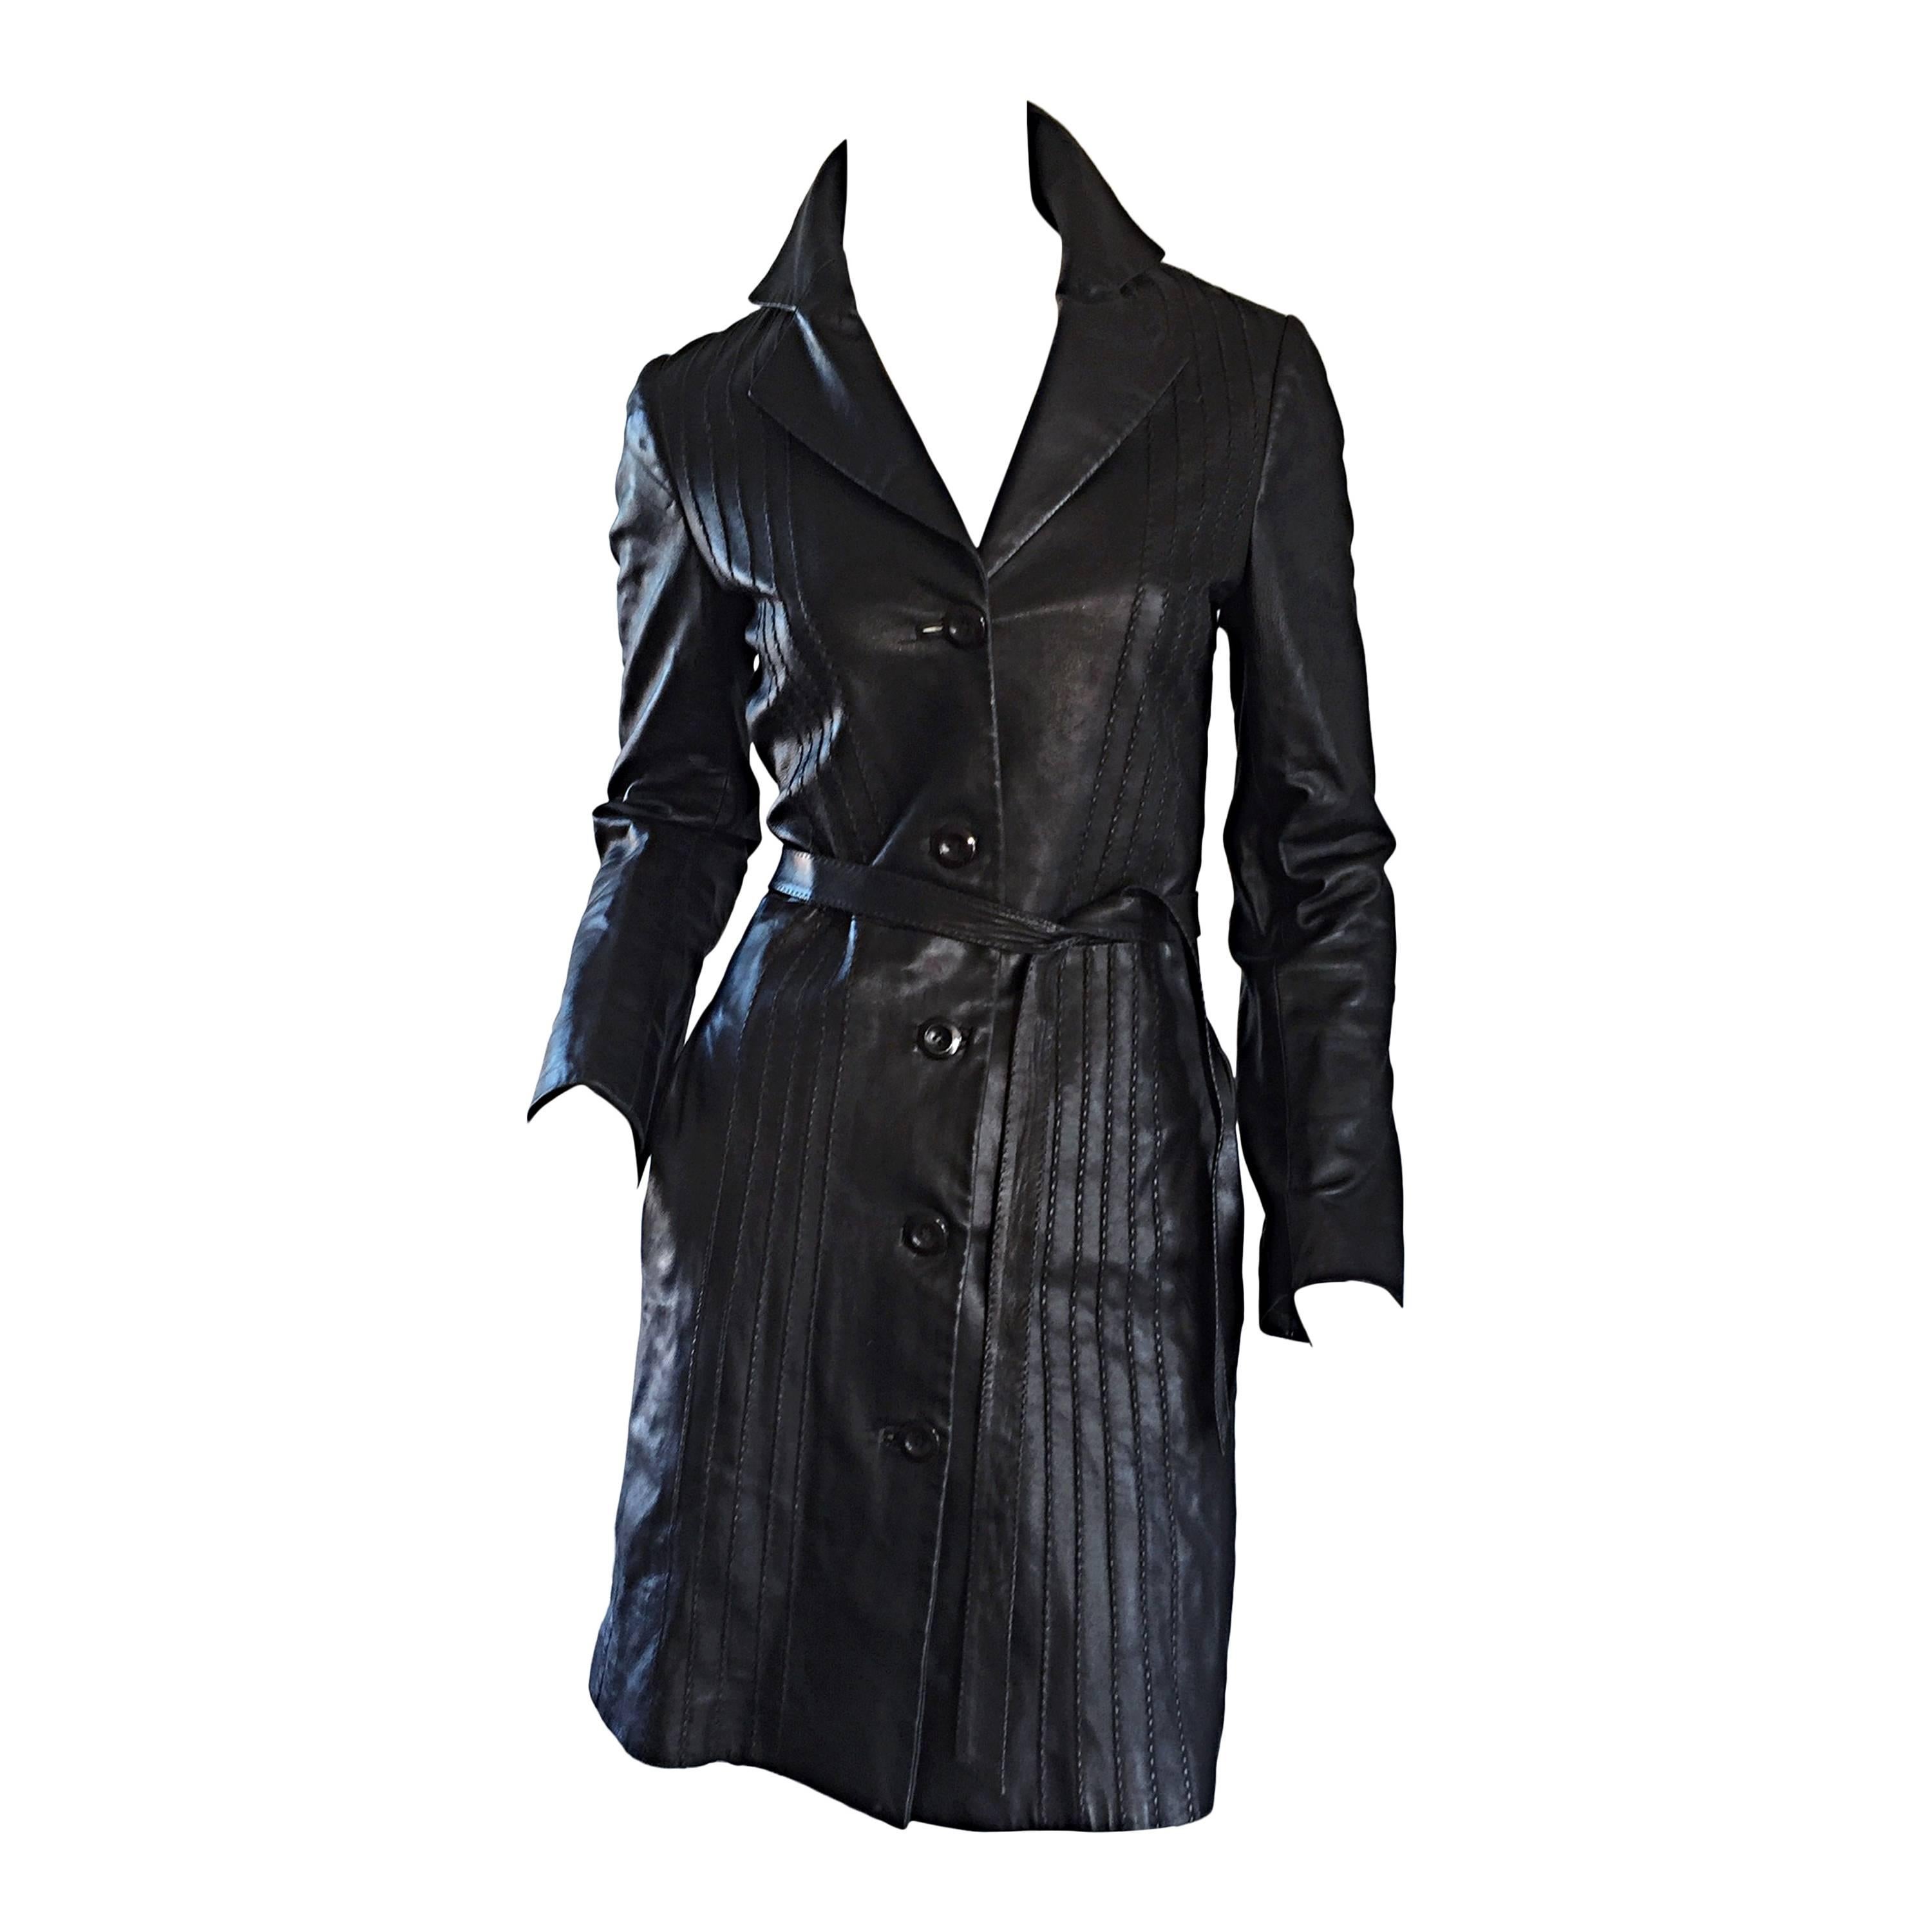 Katayone Adeli Black Leather Belted Spy Trench Jacket / Coat Dress